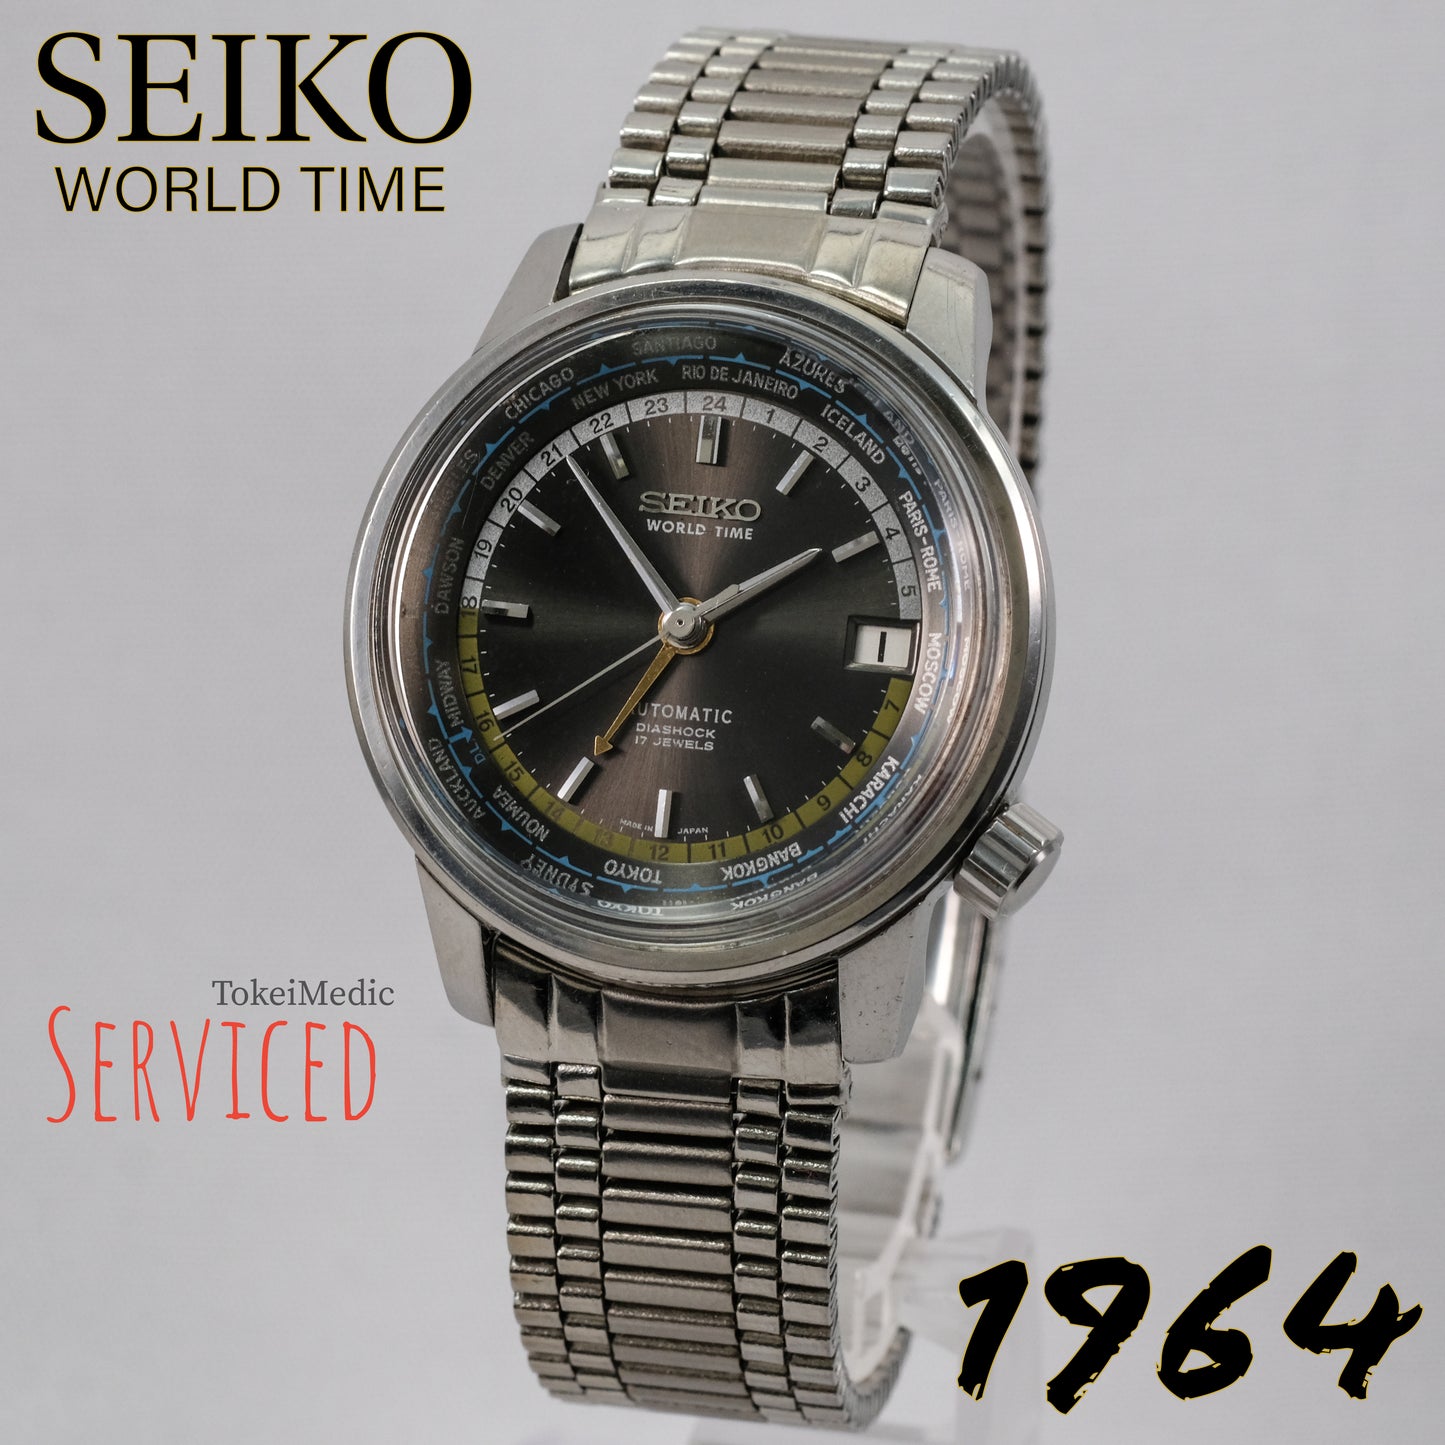 1964 Seiko World Time 6217-7000